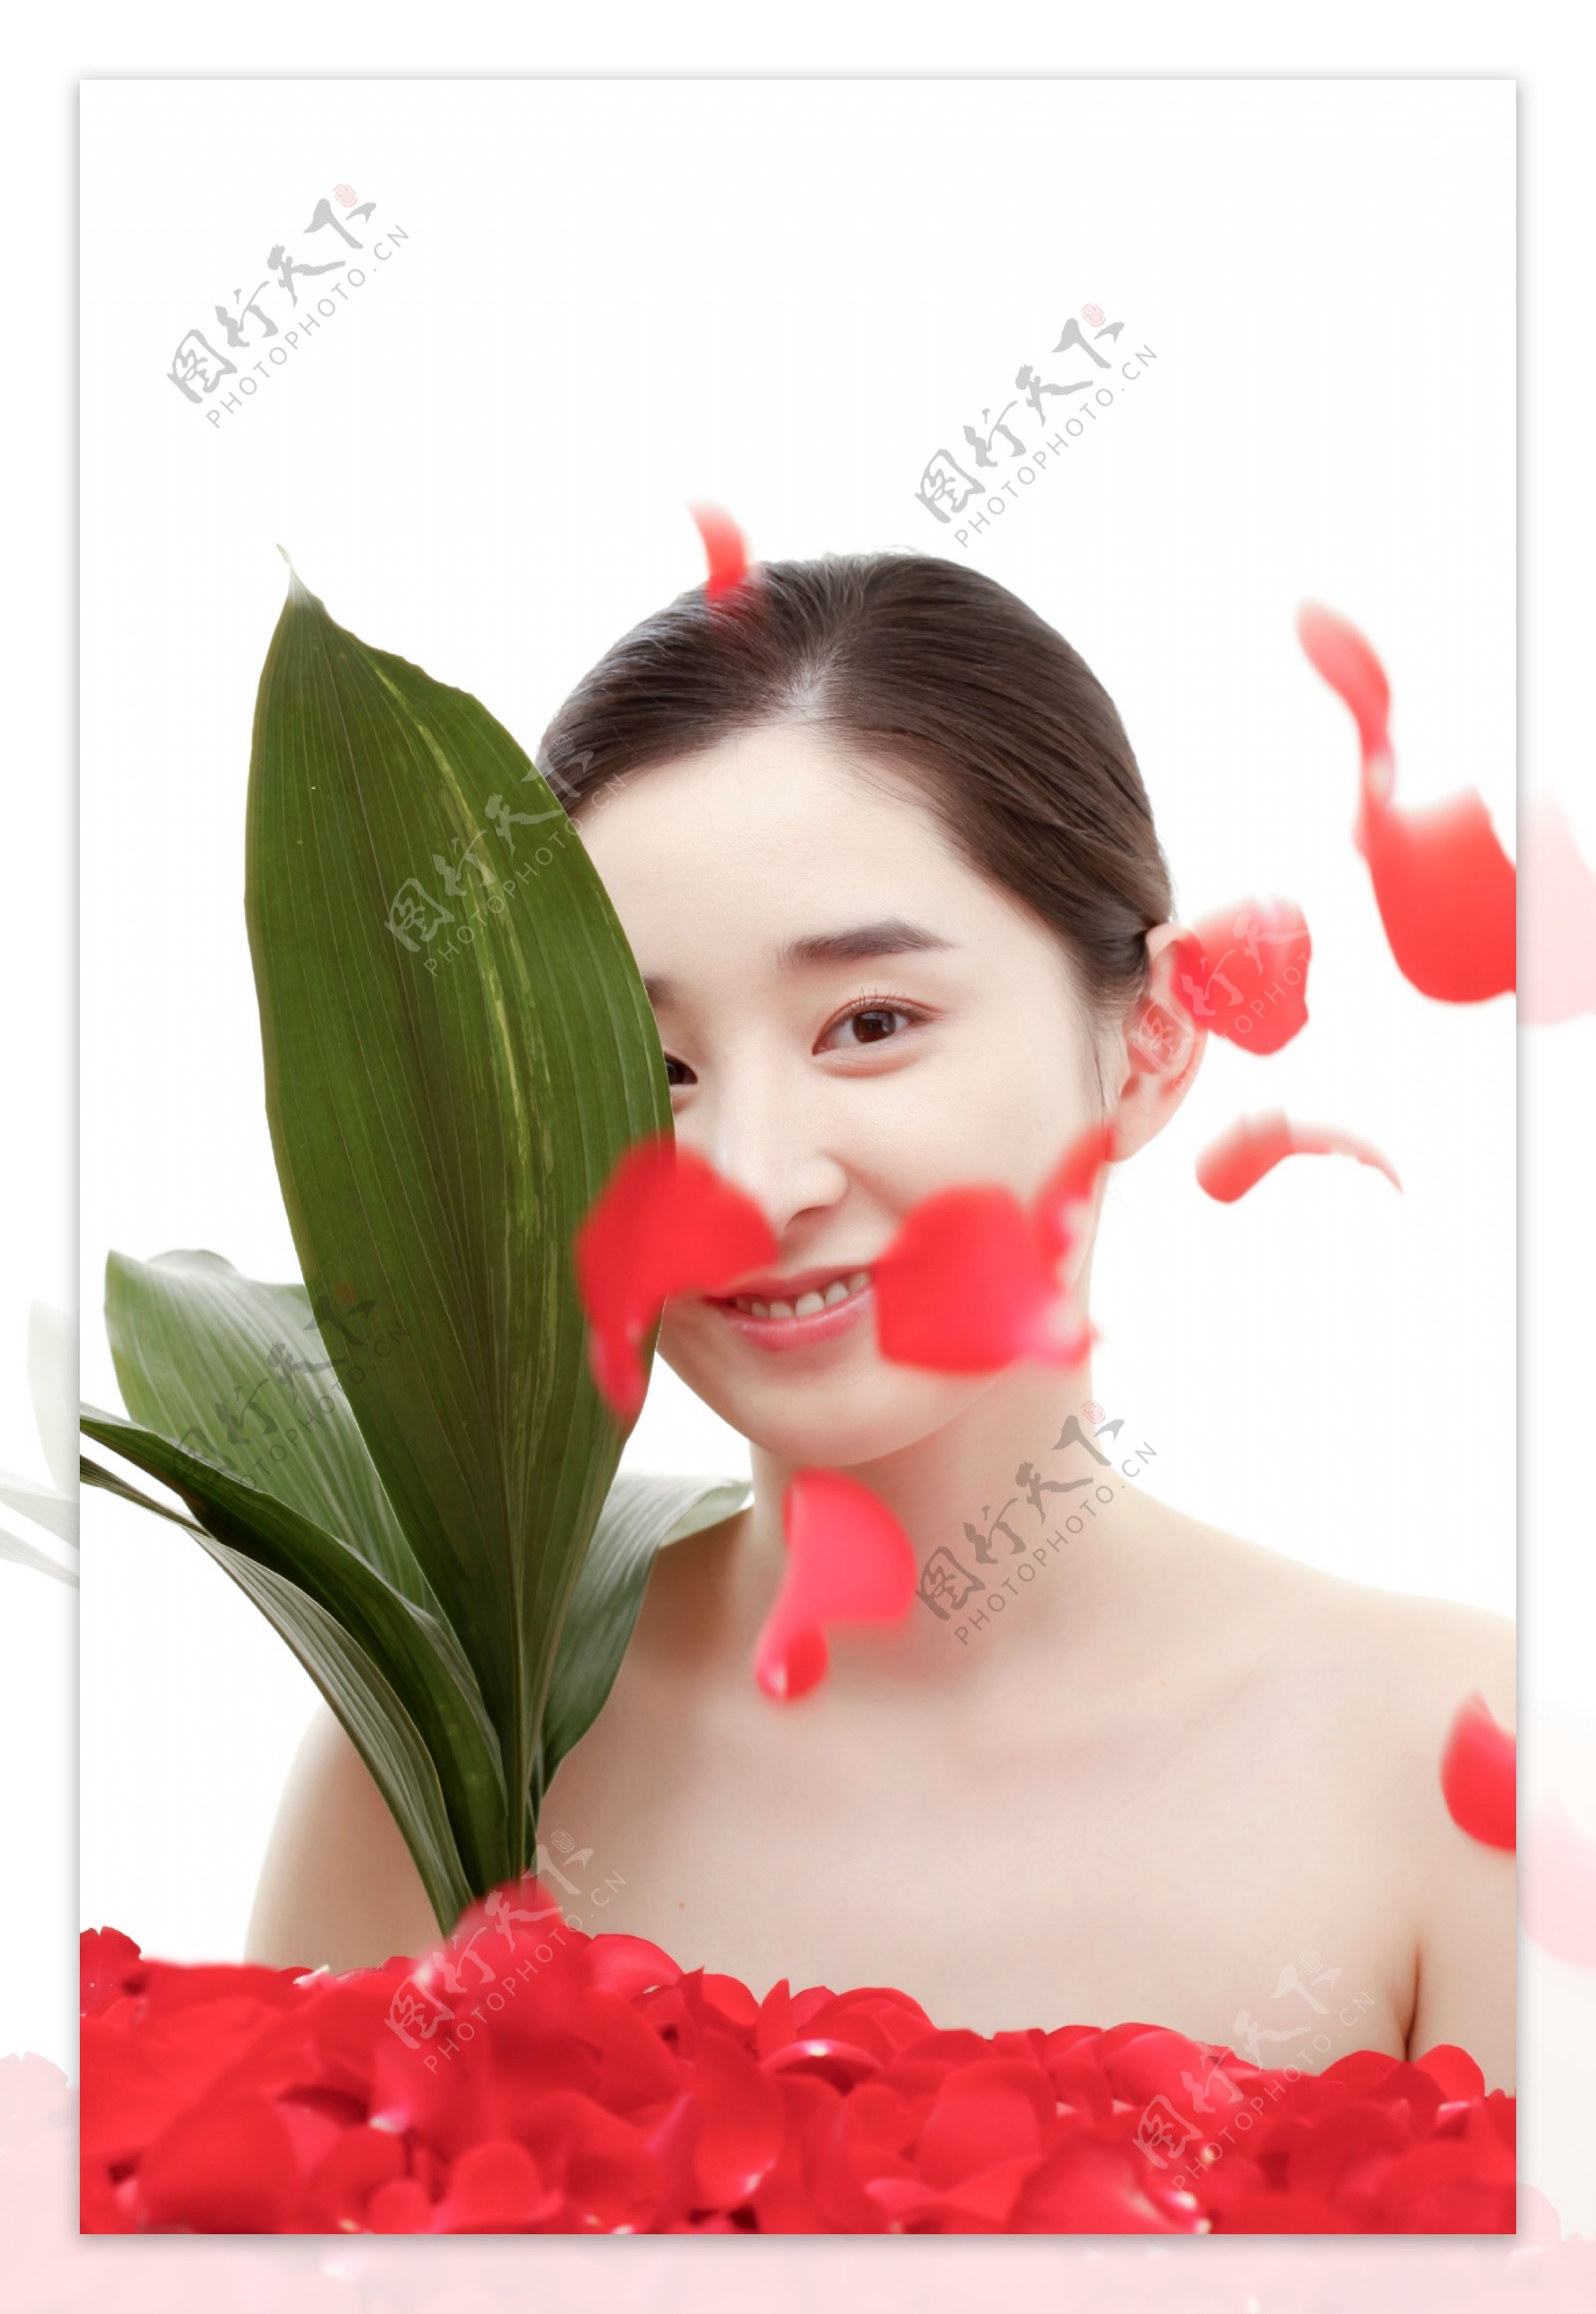 被绿叶和飘落的玫瑰花瓣遮挡的女孩图片图片